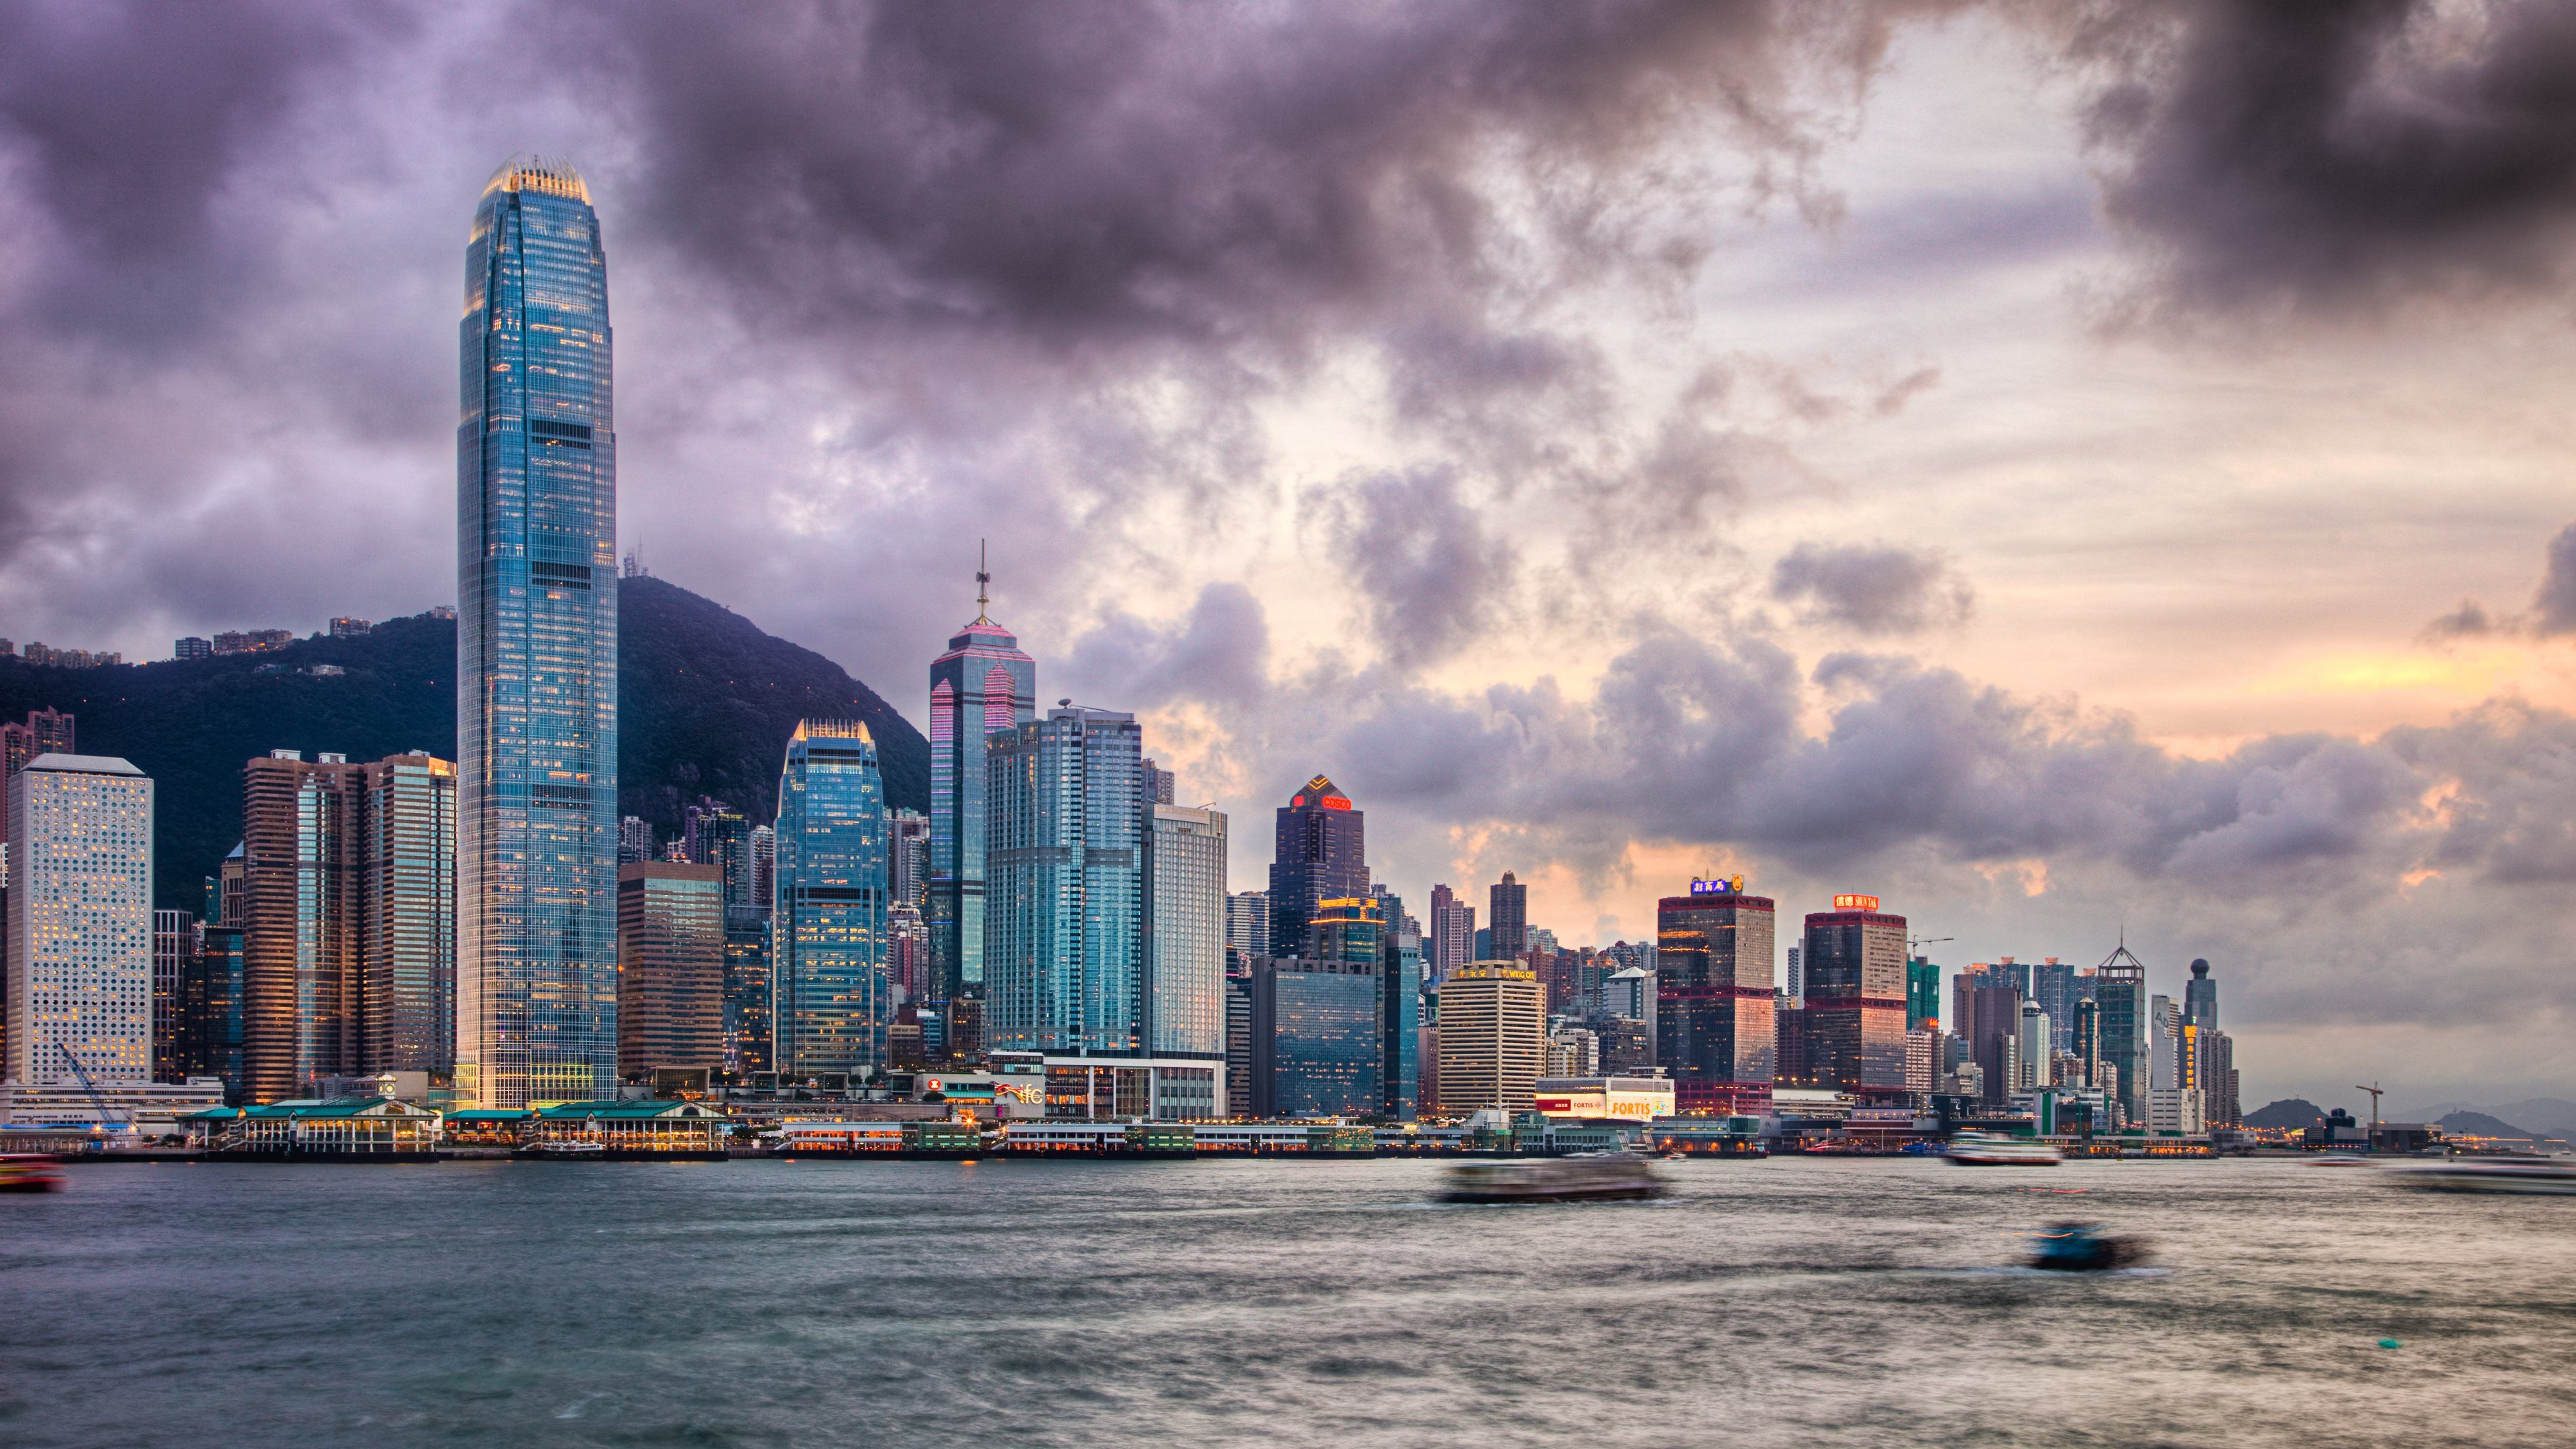 Tìm kiếm cho mình một hình nền độc đáo và miễn phí? Với bộ sưu tập Hình nền Hong Kong miễn phí, bạn sẽ khám phá được những thước hình đầy lôi cuốn về thành phố sôi nổi này. Cùng ngắm nhìn trọn vẹn các chòm đèn neon lung linh, các tòa nhà cao chọc trời hay cảnh quan thiên nhiên ngoạn mục tại Hong Kong ngay bây giờ!